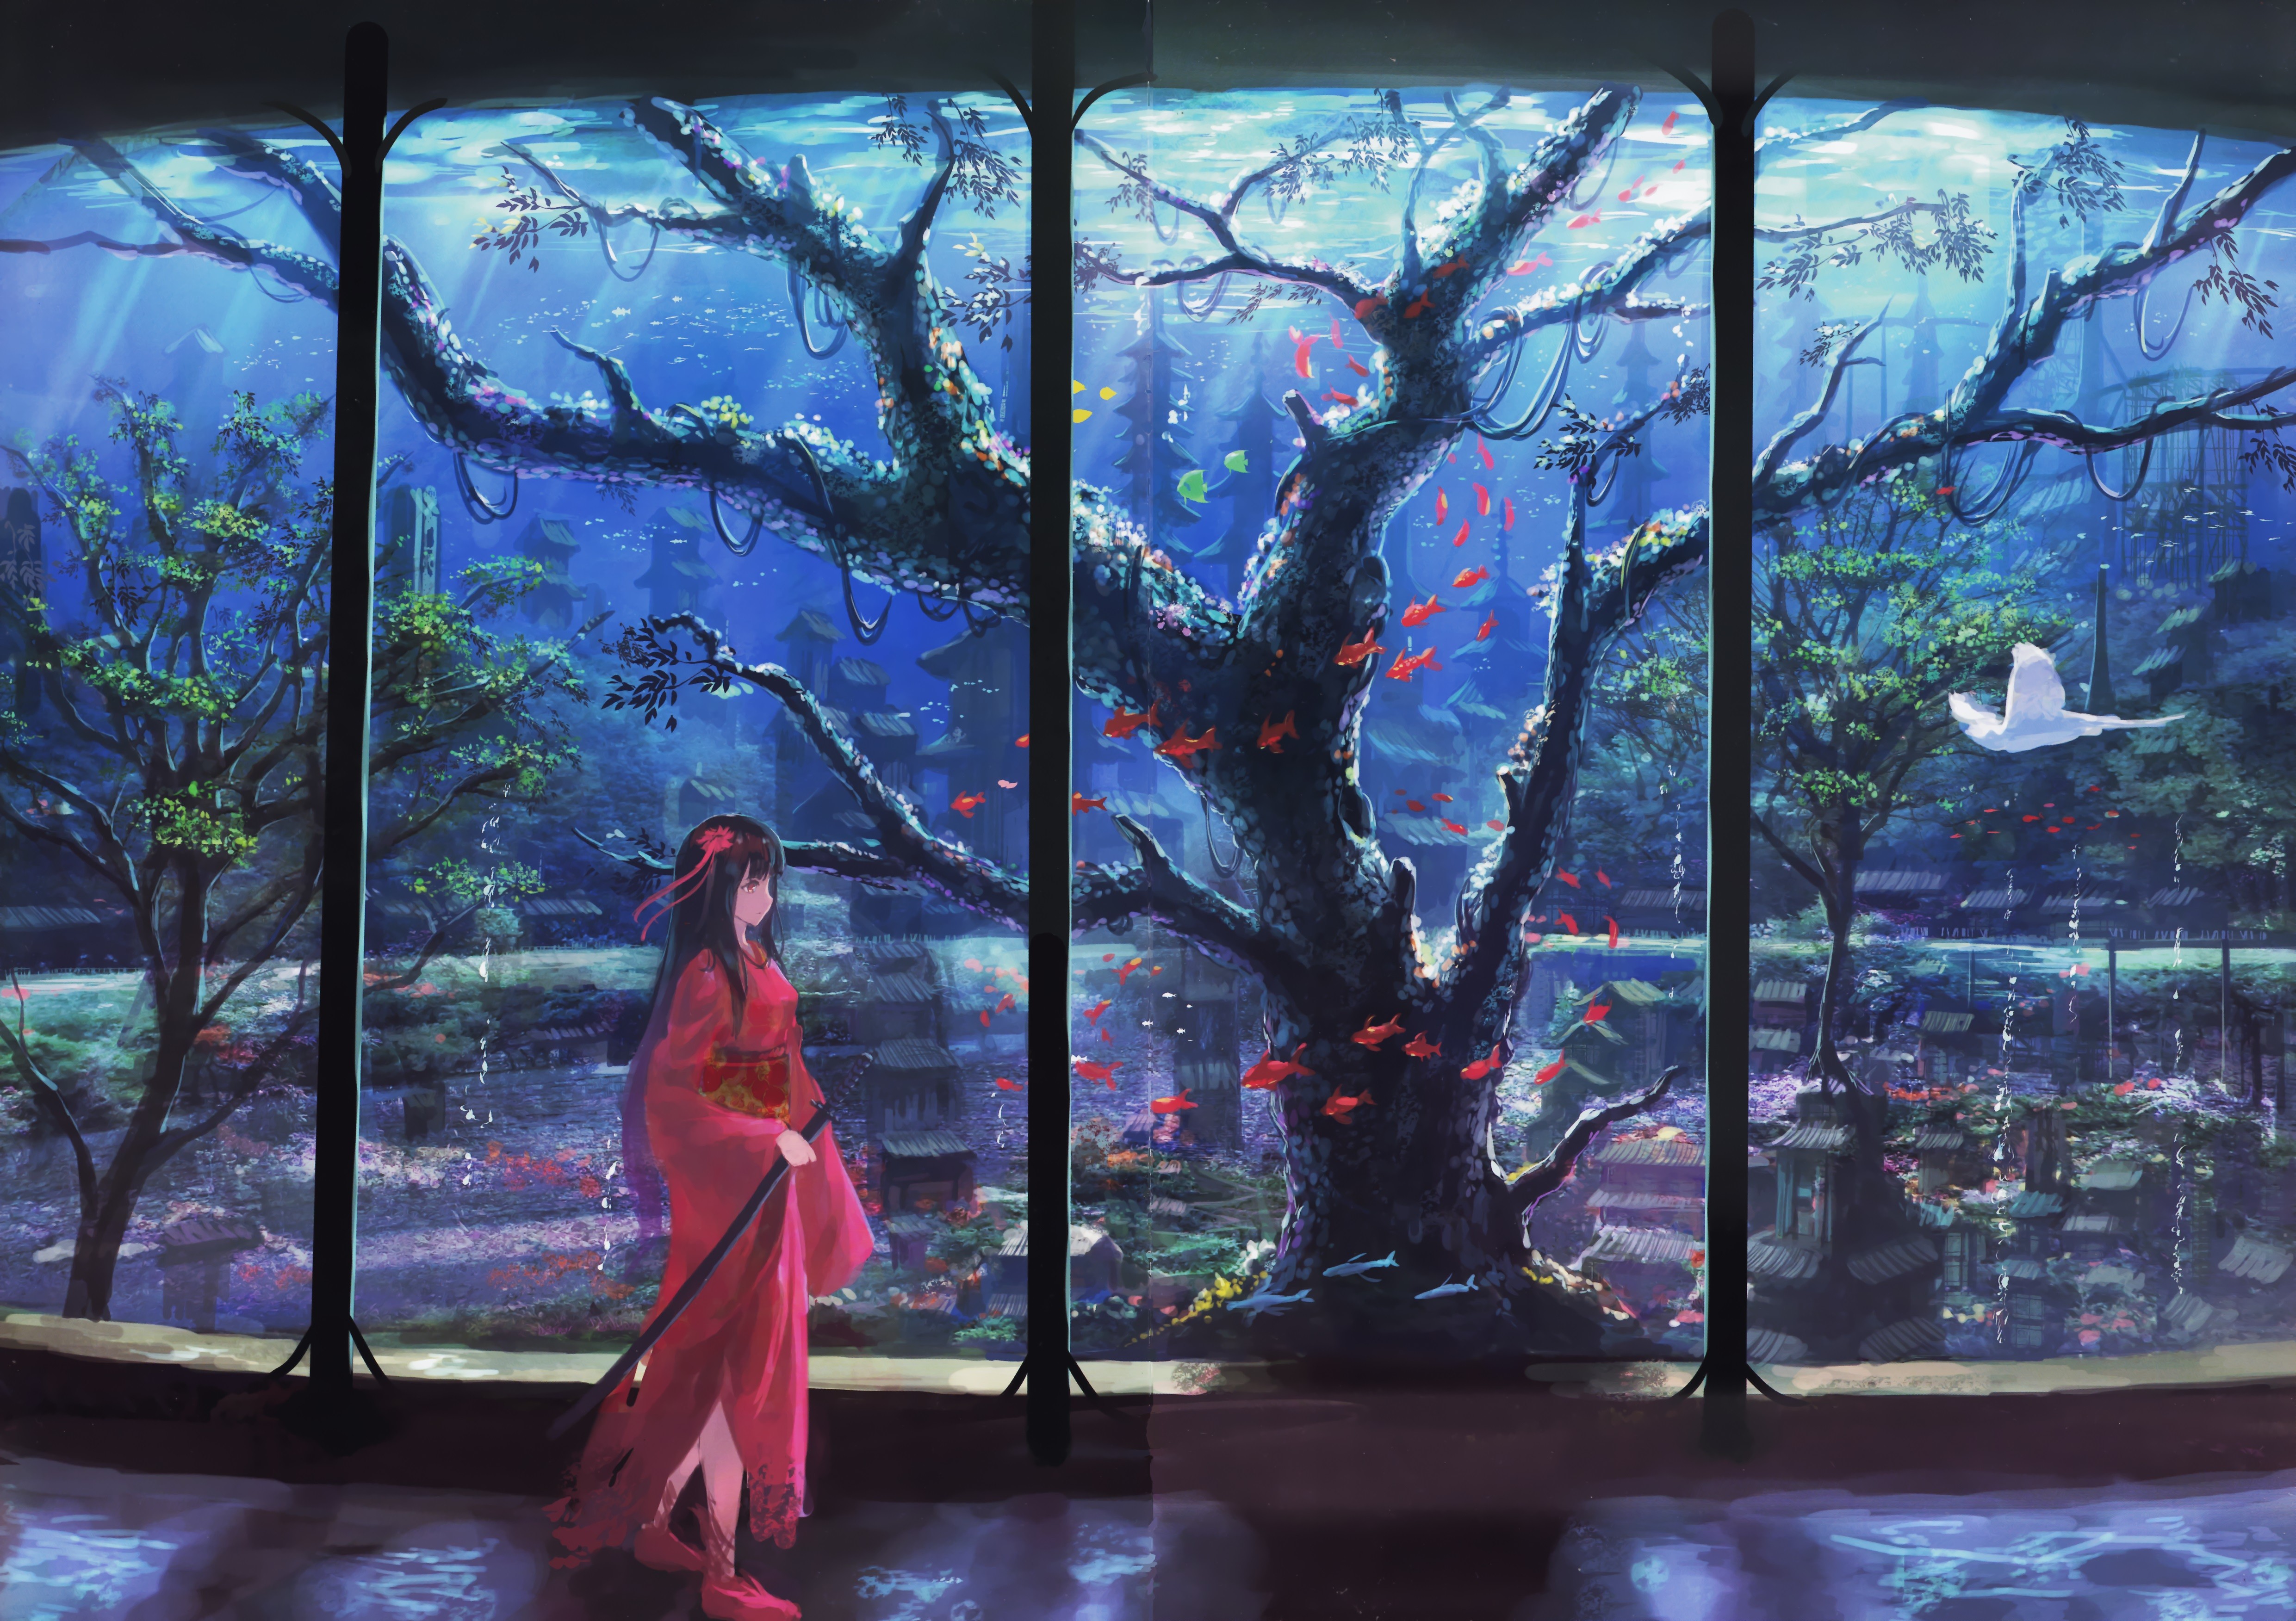 Anime 4962x3504 anime girls anime trees fantasy art fantasy girl sword women with swords dress red dress flower in hair dark hair